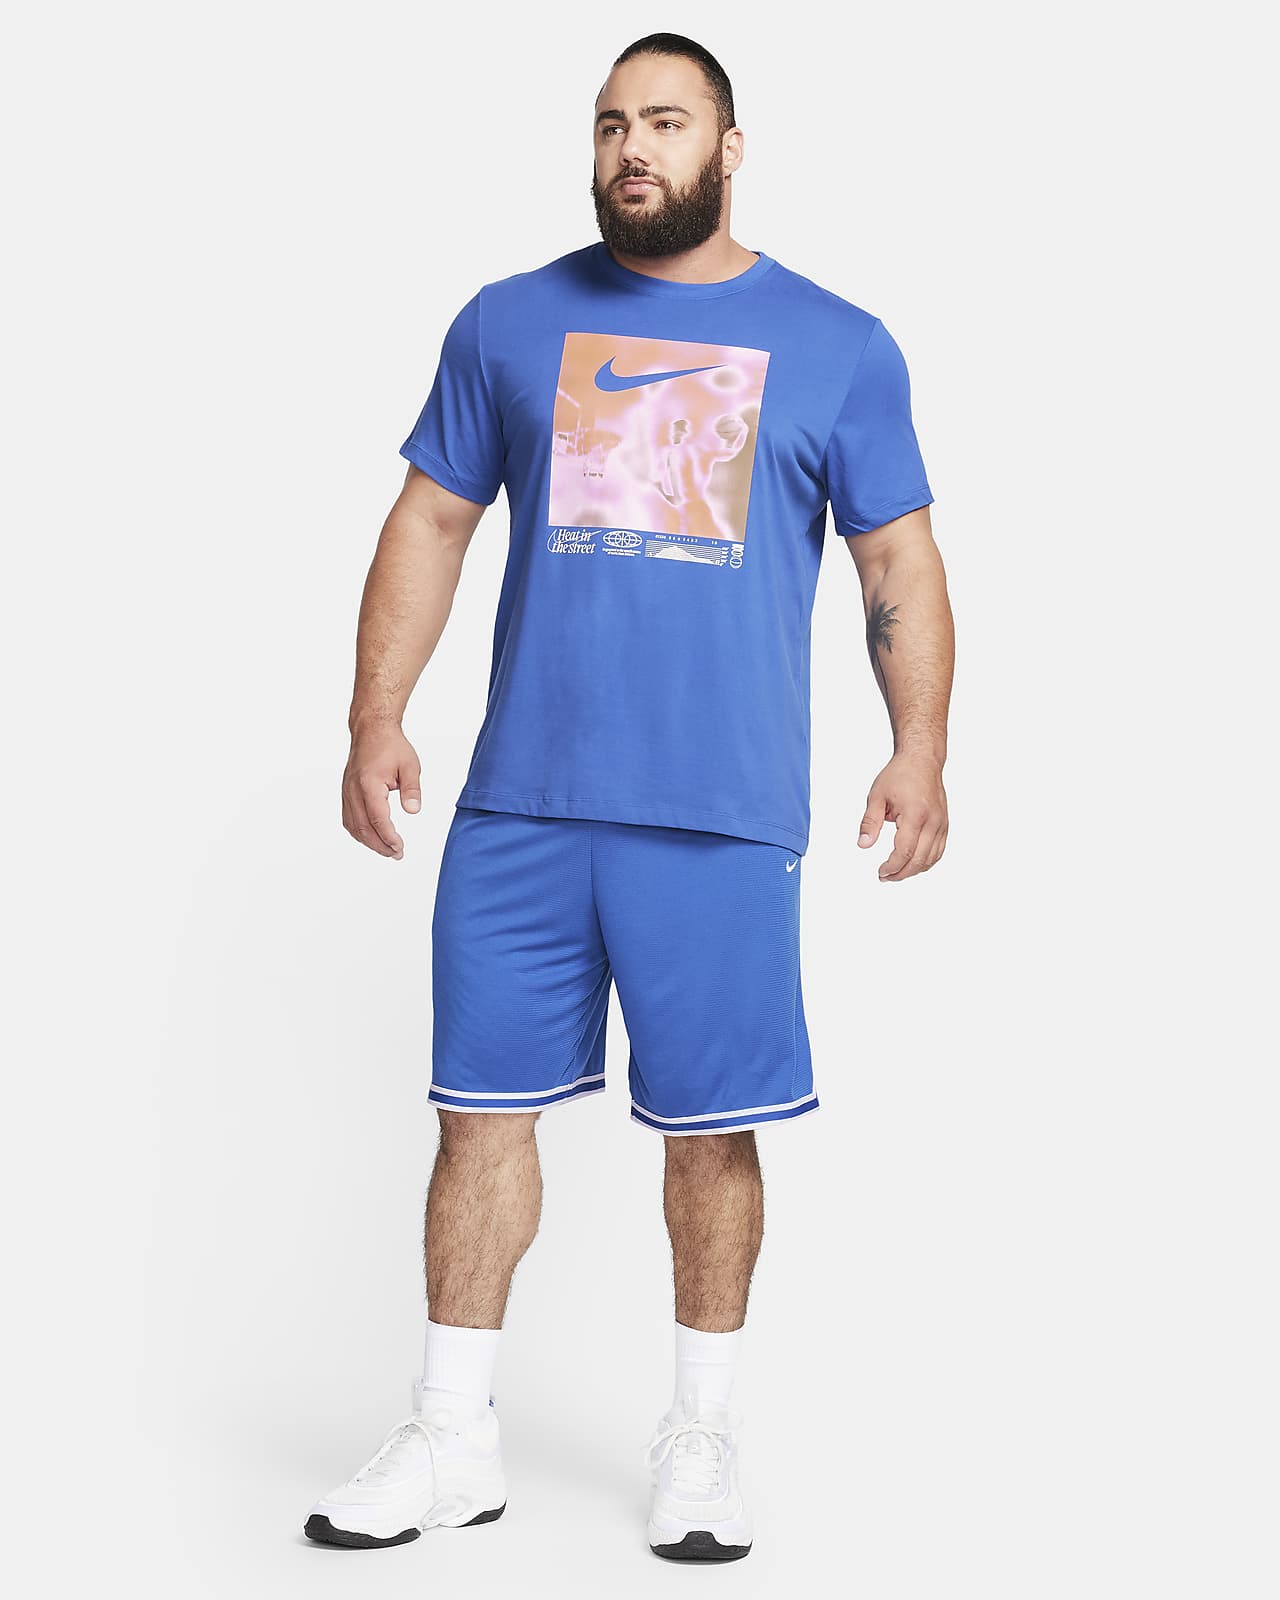 Playera para Básquetbol Nike LeBron Dri-FIT de Hombre